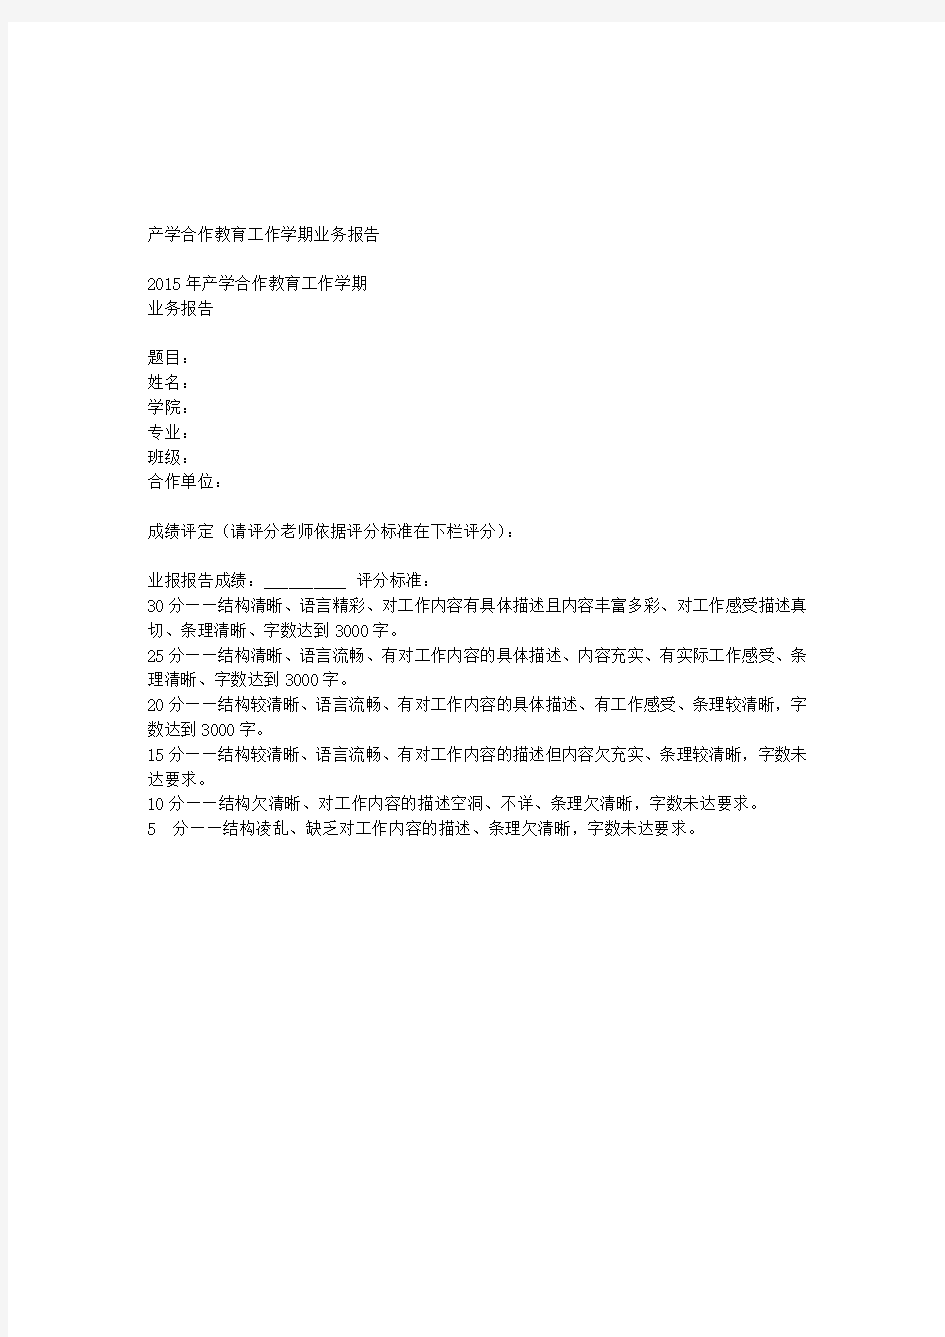 2015上海工程技术大学产学合作业务报告示例